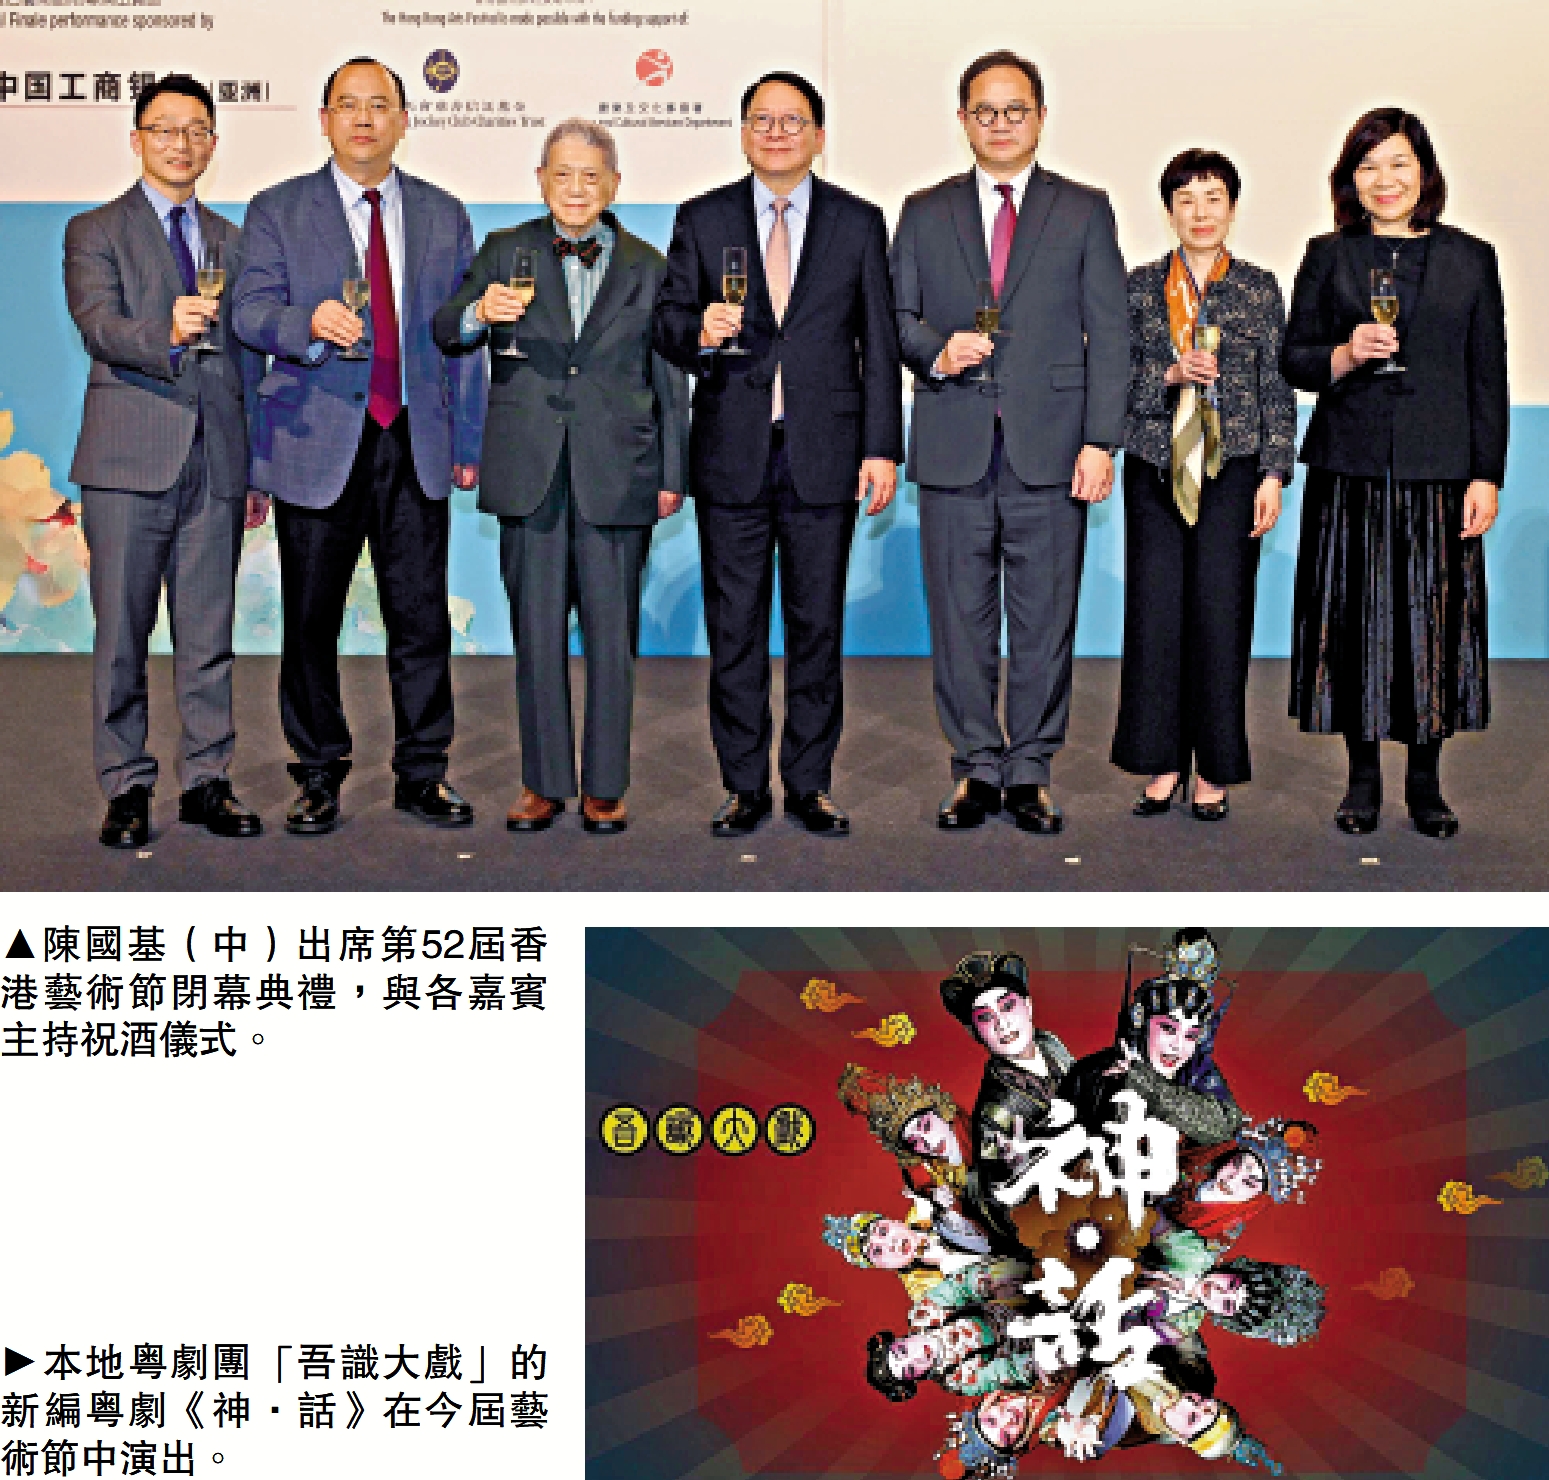 　　上圖：陳國基（中）出席第52屆香港藝術節閉幕典禮，與各嘉賓主持祝酒儀式。下圖：本地粵劇團「吾識大戲」的新編粵劇《神·話》在今屆藝術節中演出。